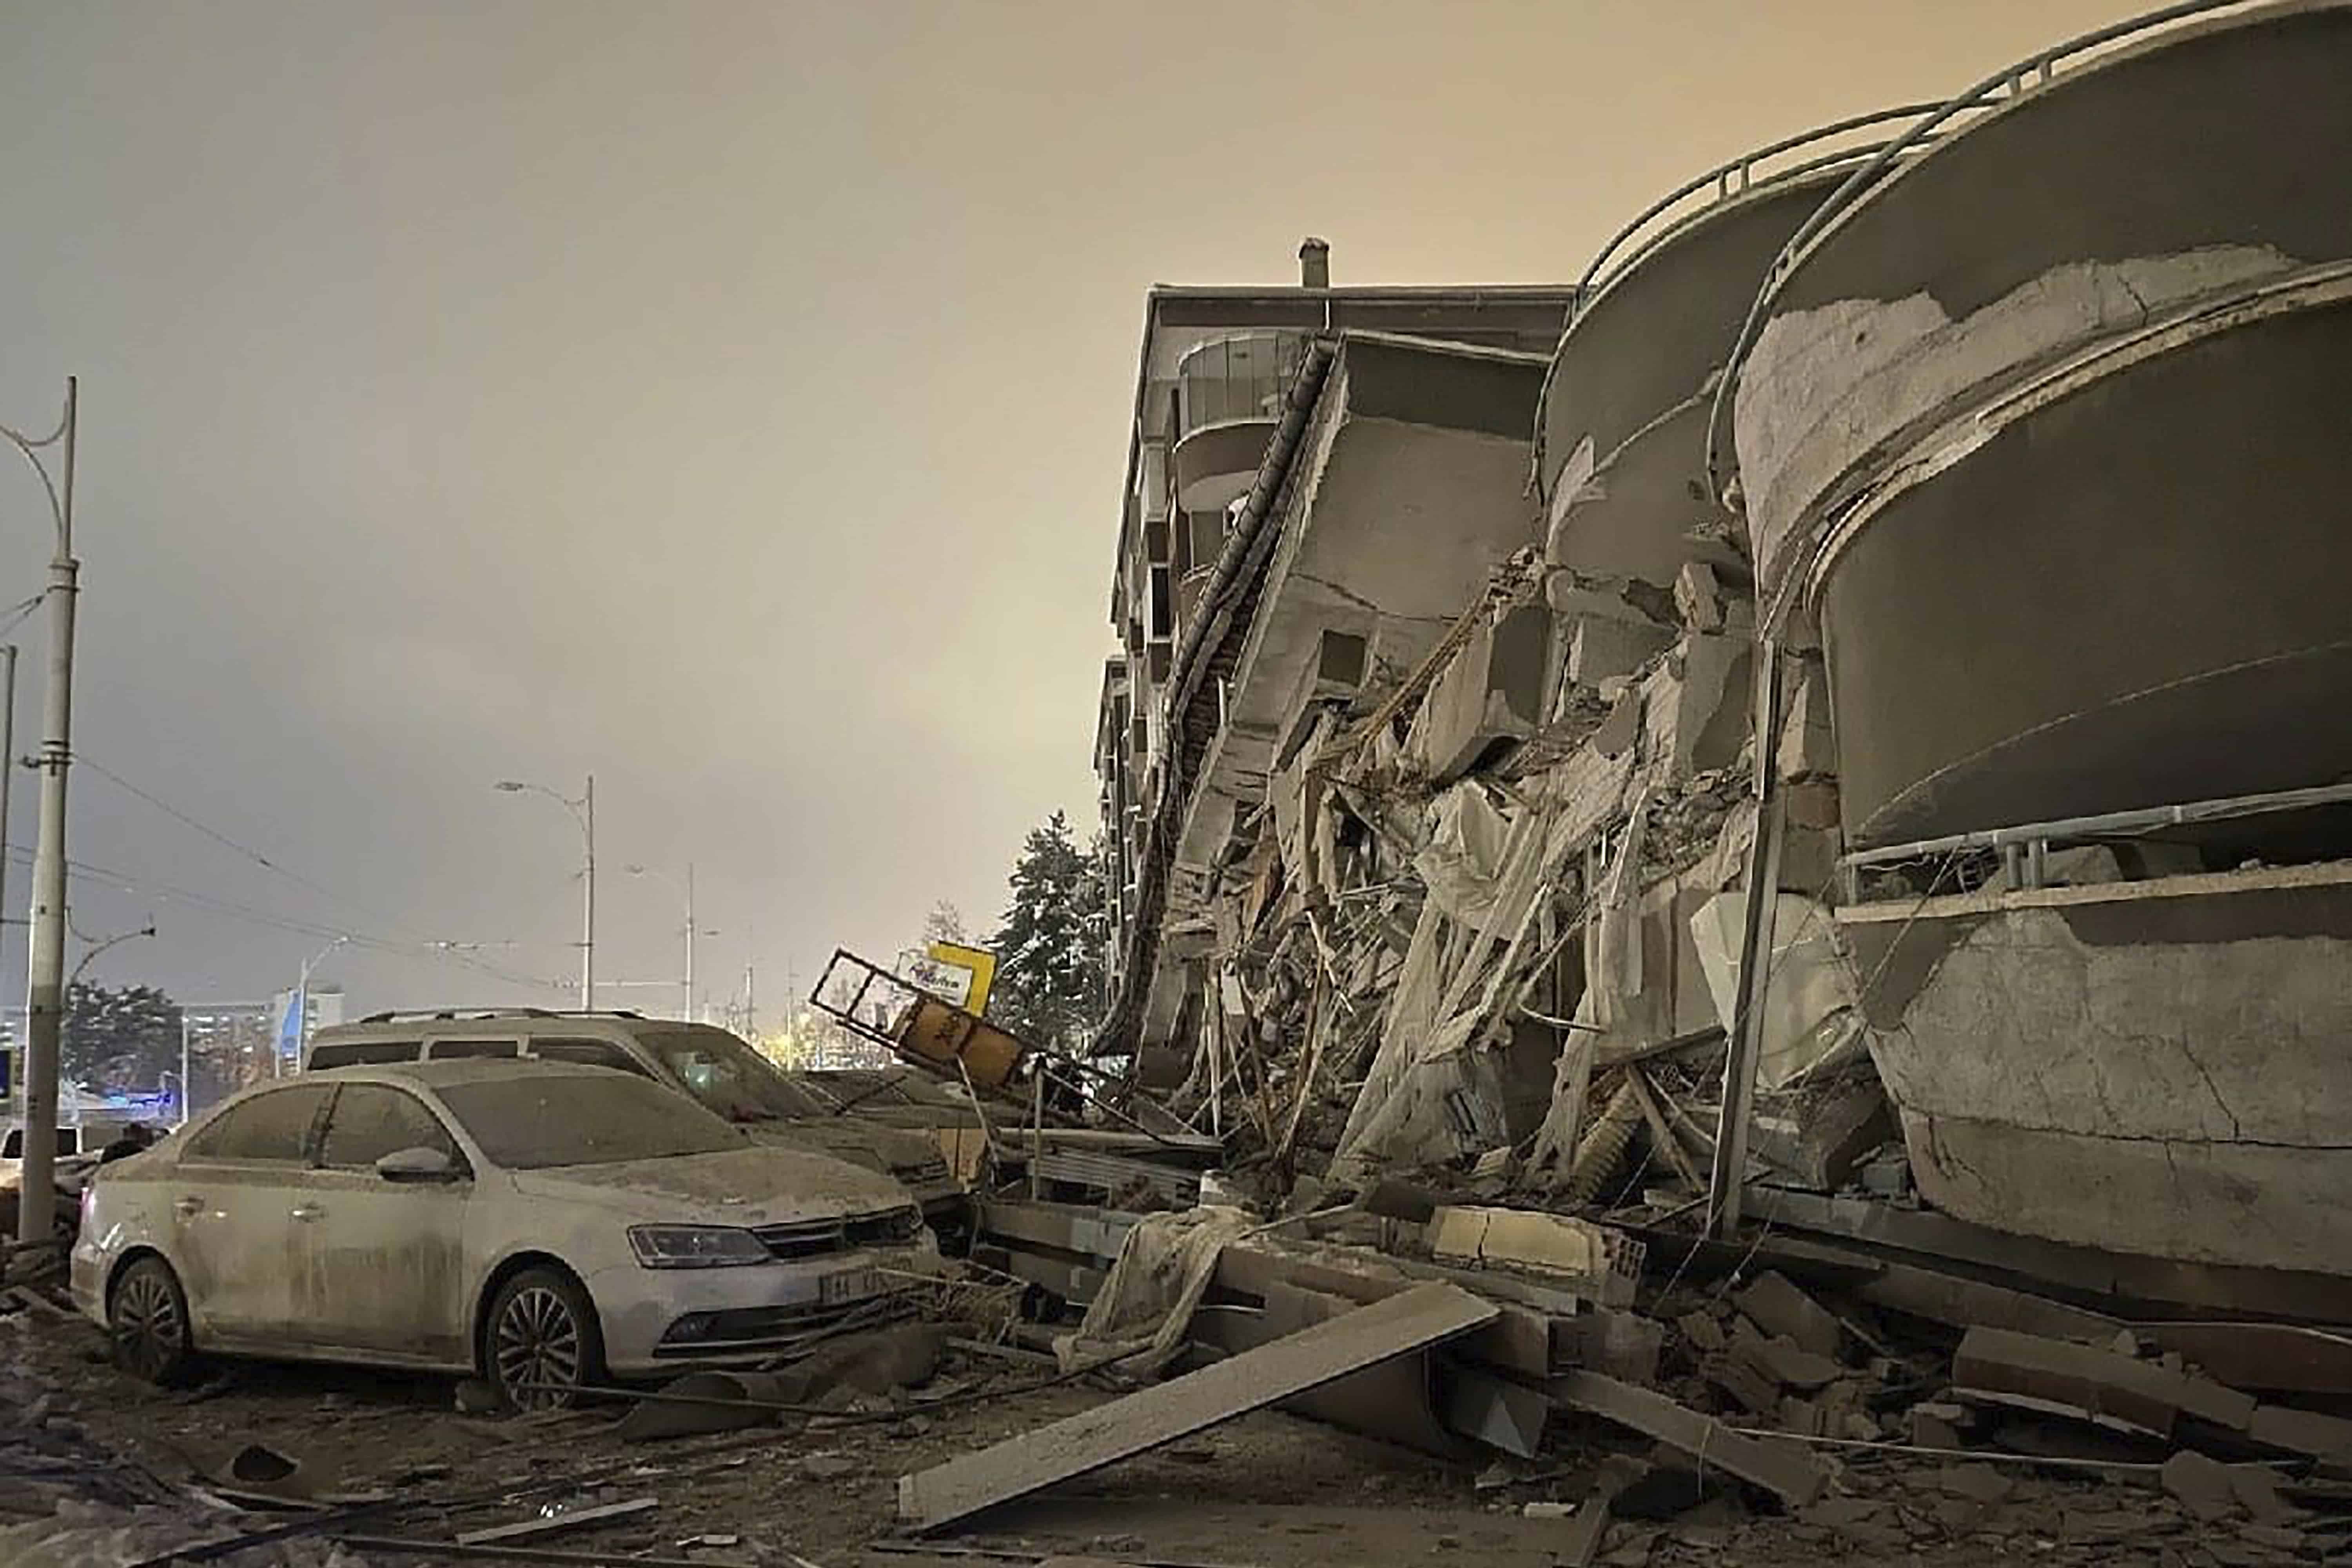 Los vehículos dañados se encuentran estacionados frente a un edificio derrumbado luego de un terremoto en Diyarbakir, sureste de Turquía, la madrugada del lunes 6 de febrero de 2023. Un poderoso terremoto derribó varios edificios en el sureste de Turquía y Siria y se temen muchas víctimas.